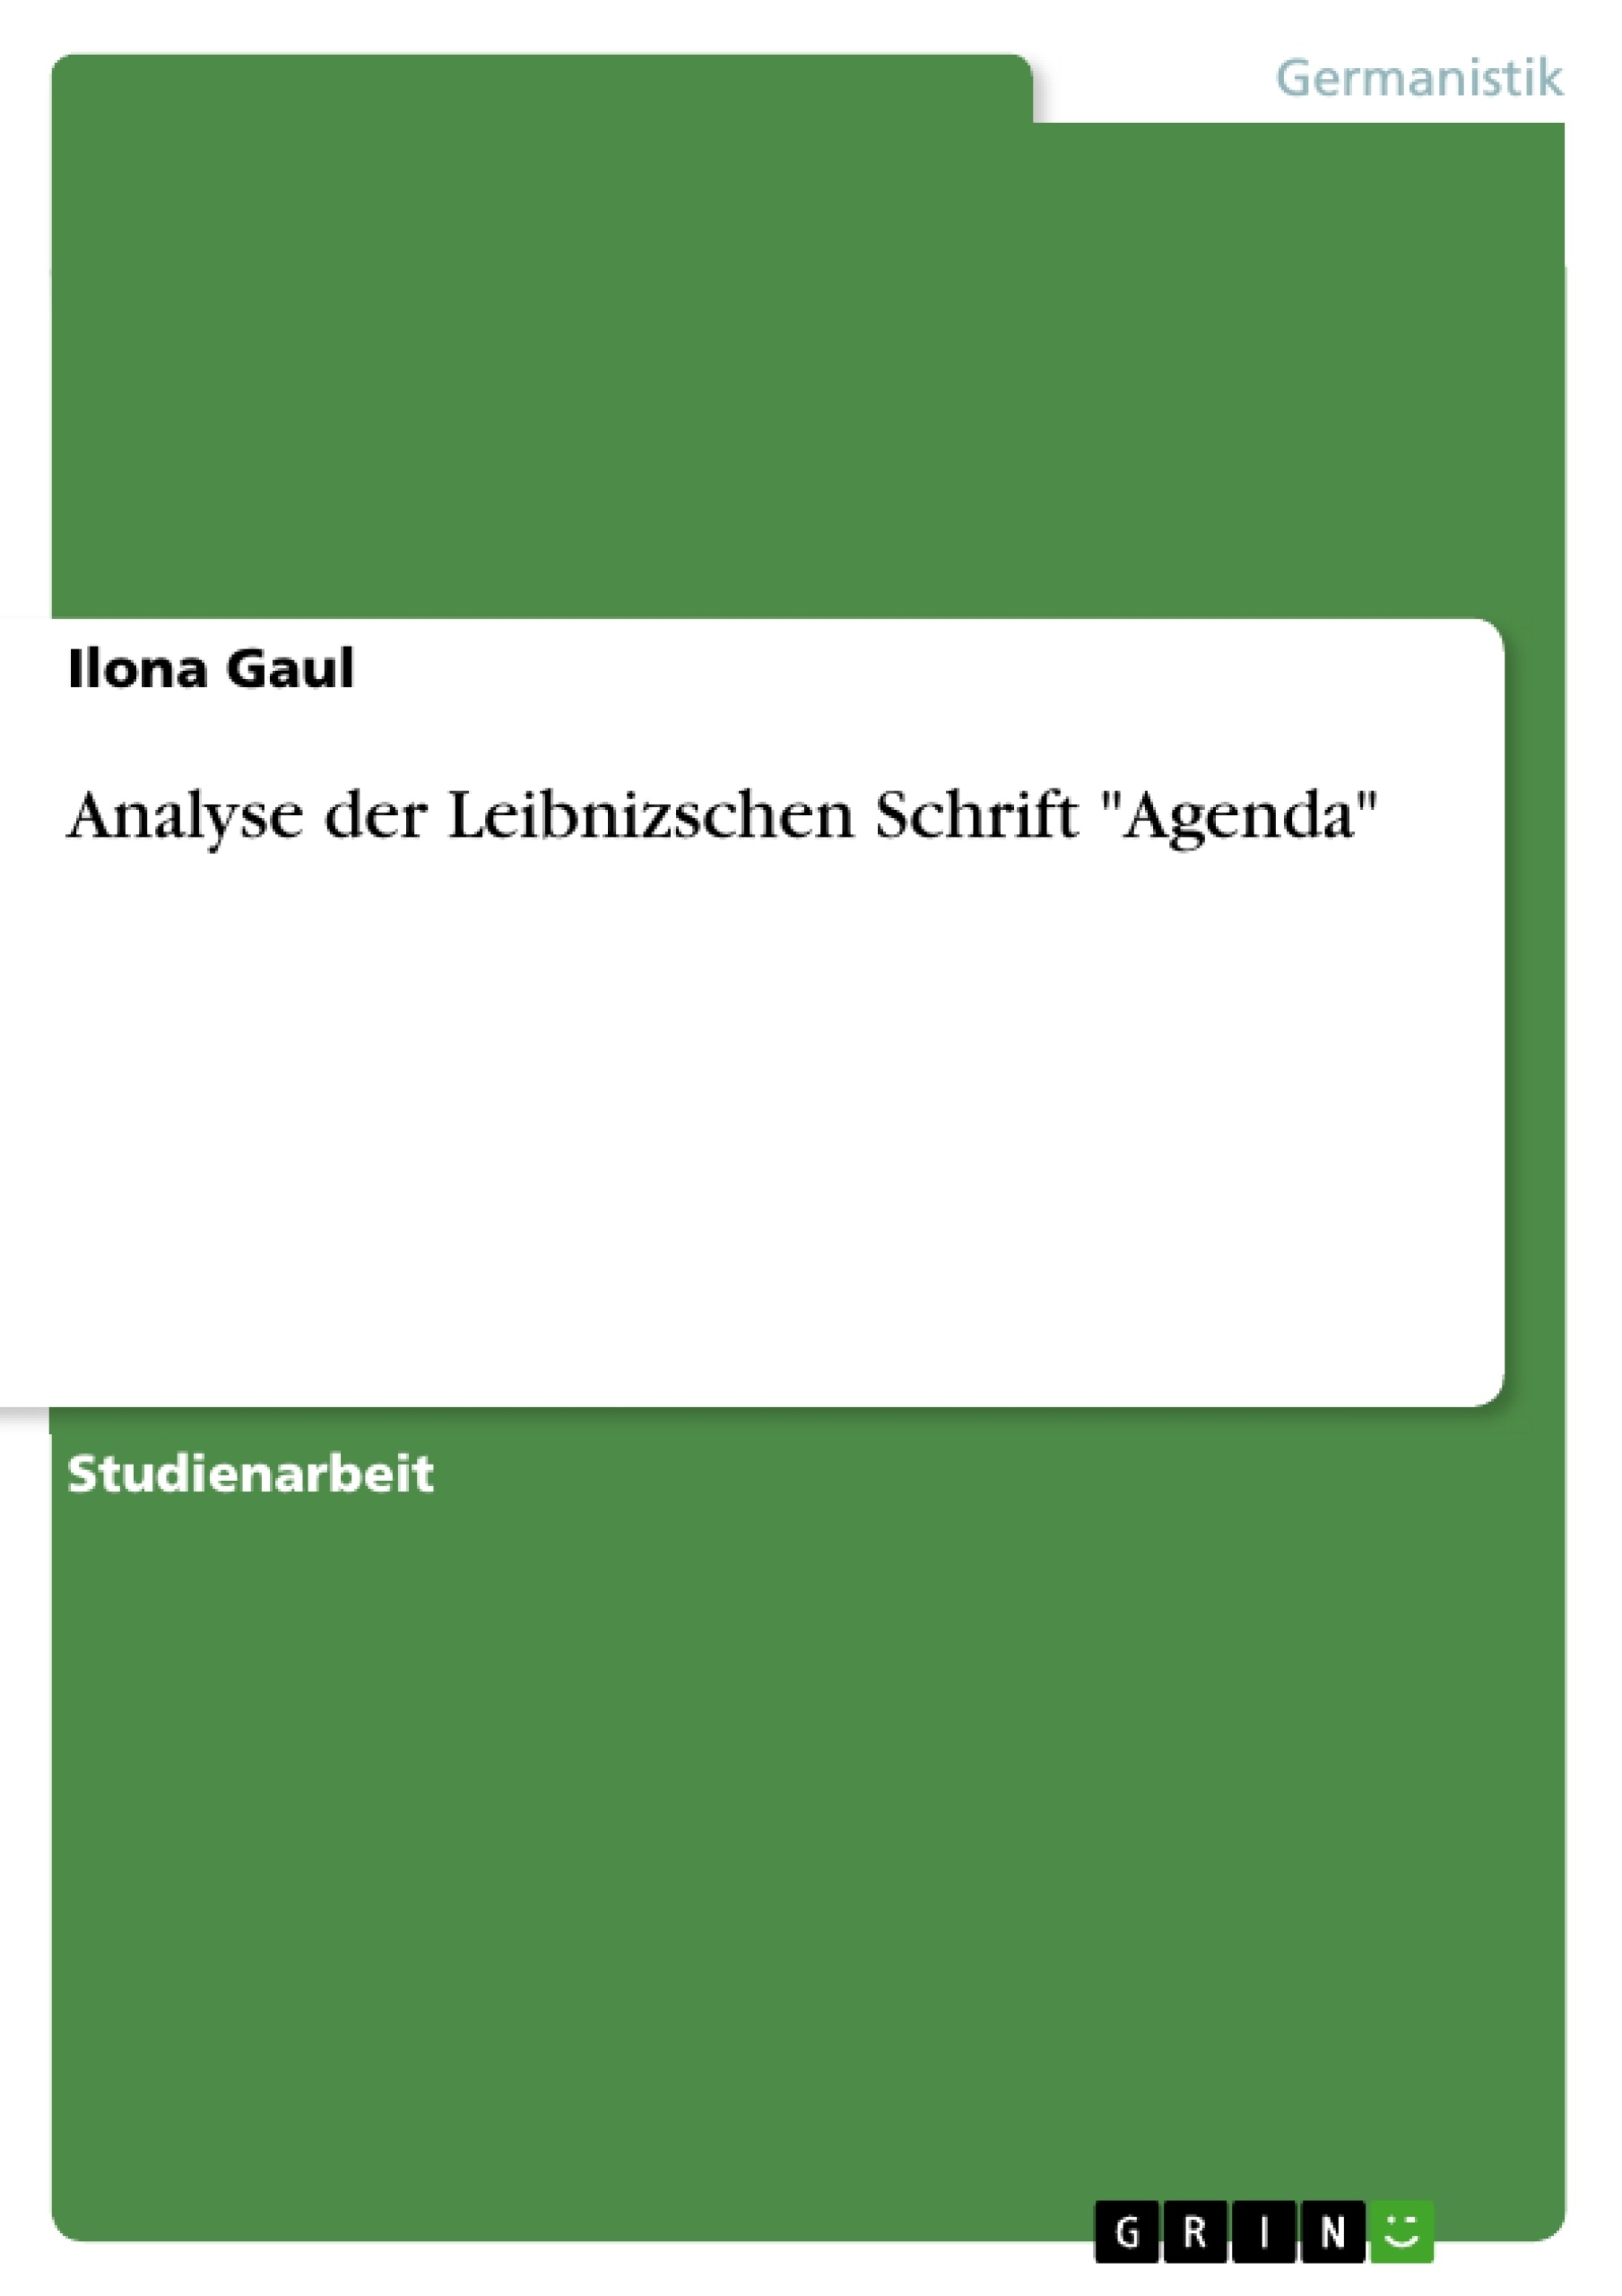 Titre: Analyse der Leibnizschen Schrift "Agenda"